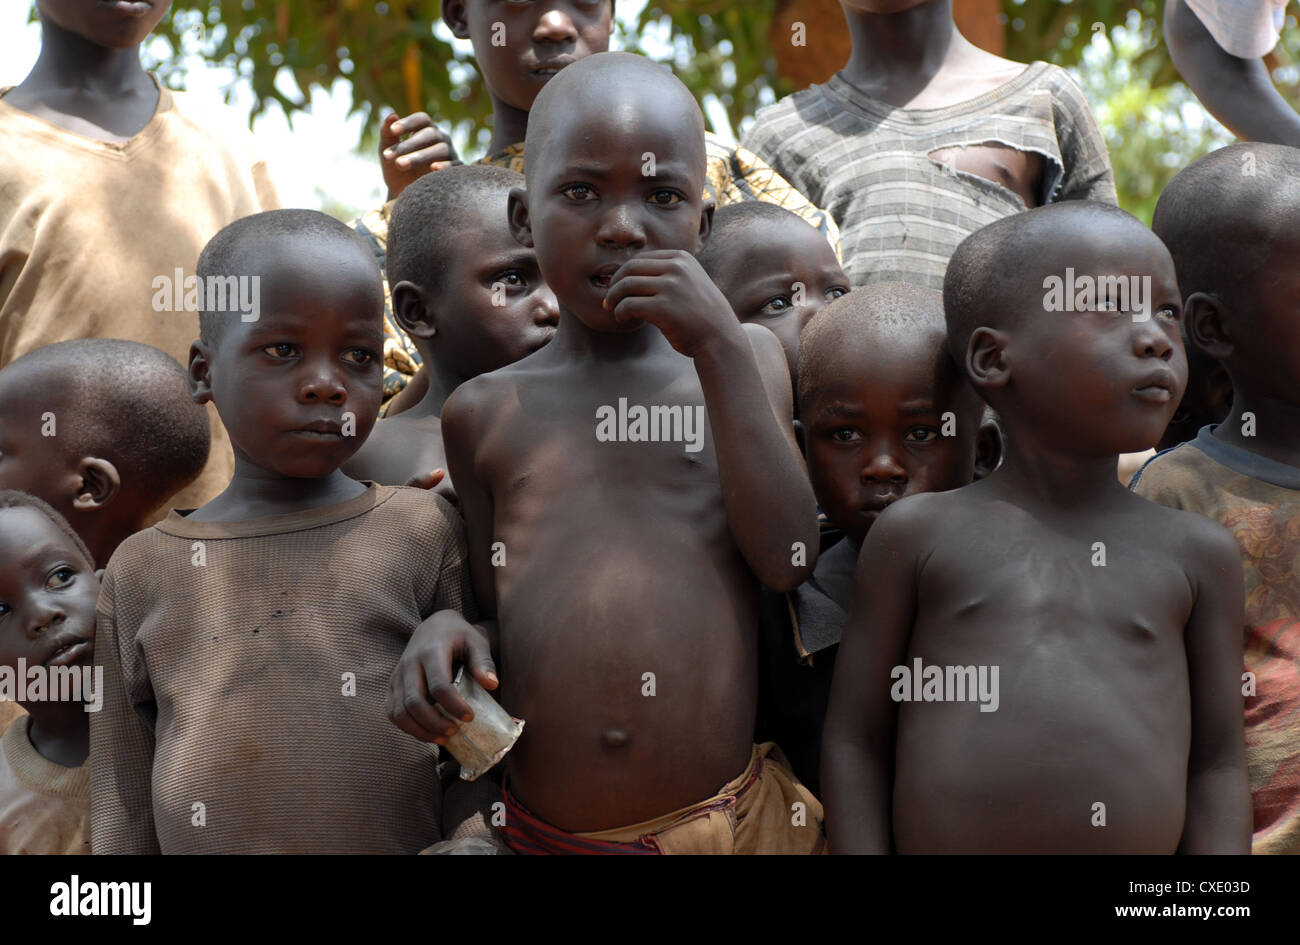 Uganda, refugee camp Amida Stock Photo